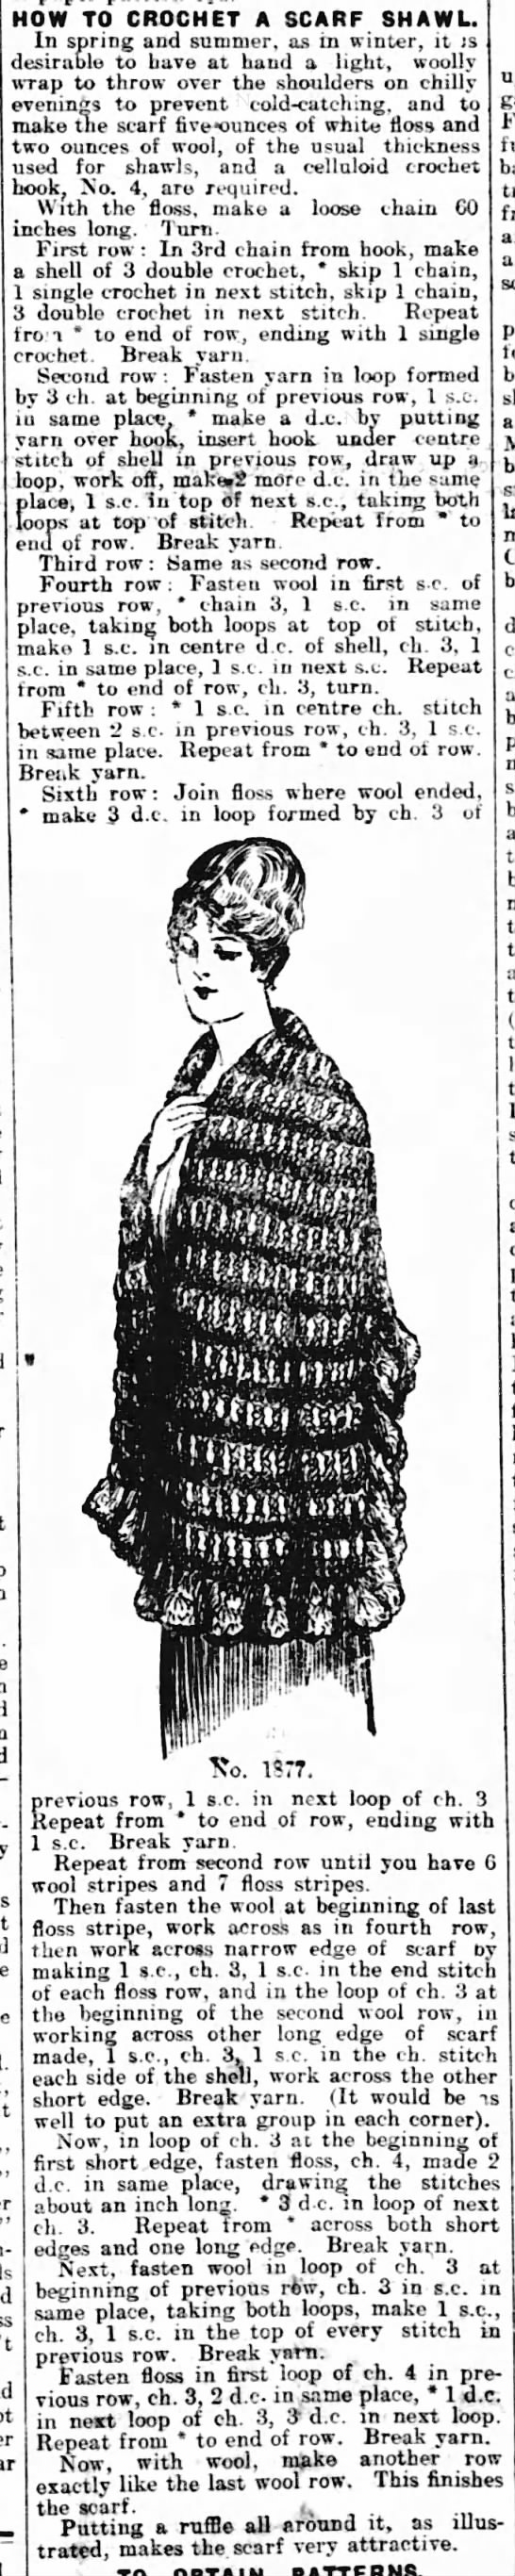 "Scarf shawl" crochet pattern (1915) - 